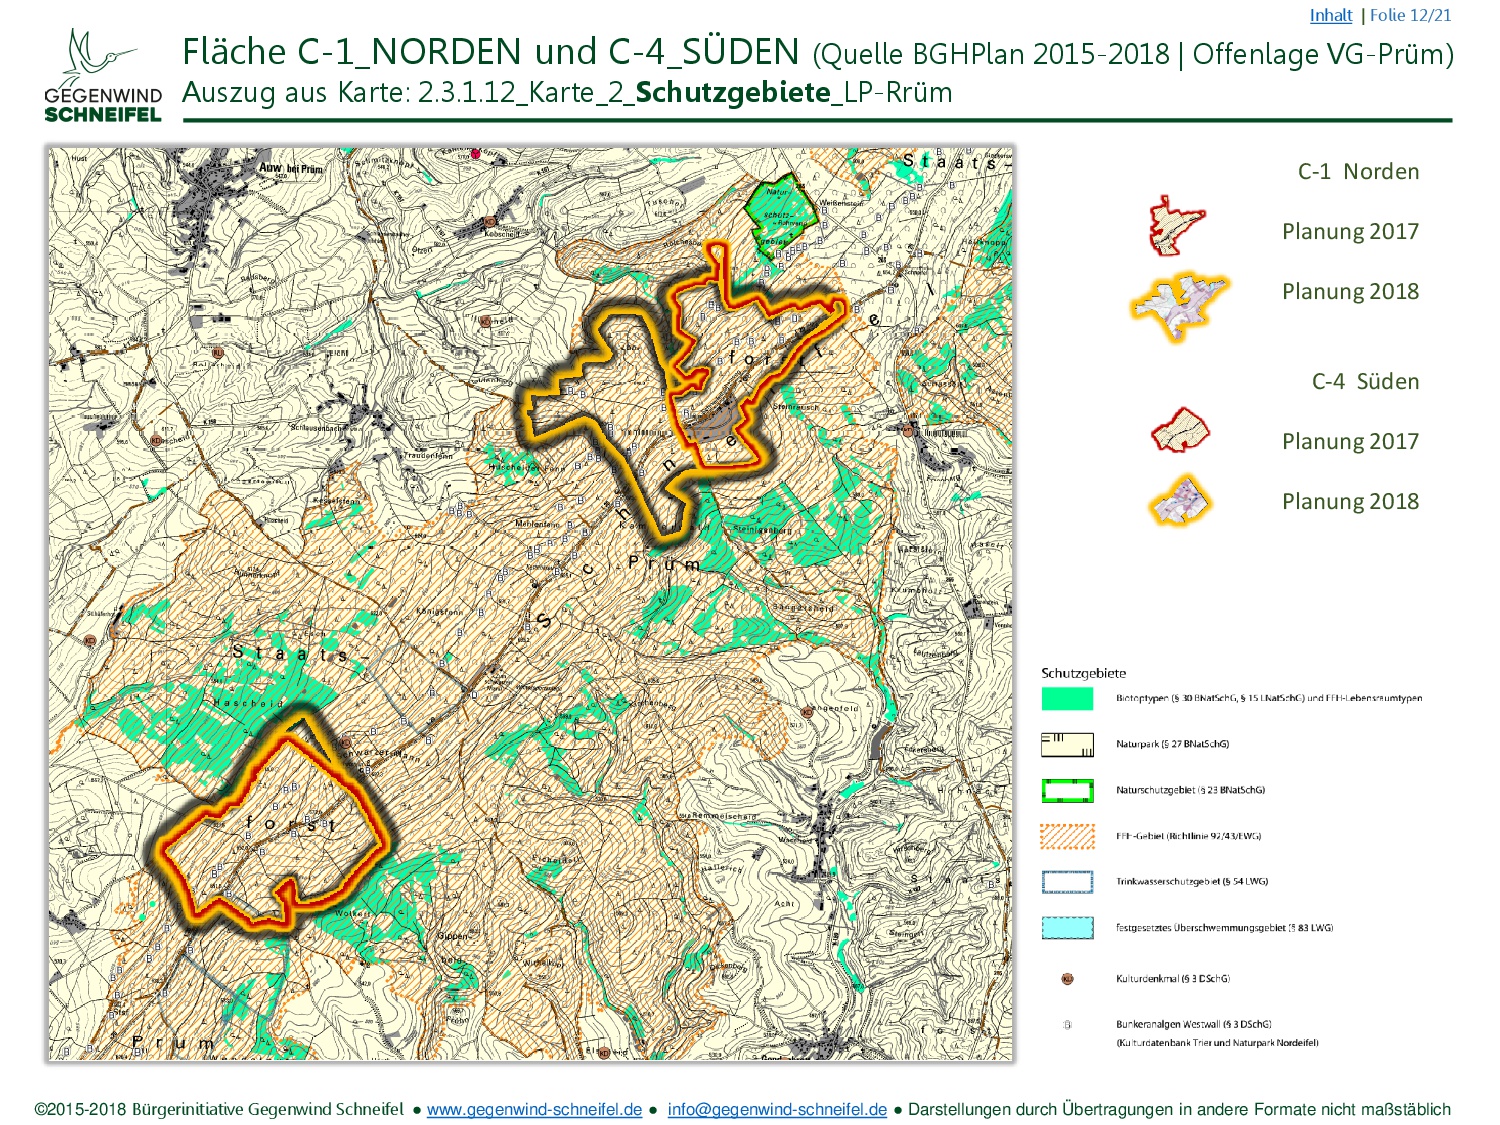 FNP Schneifel C1 C4 BiGWS C2018 (12 22) (Karte 2 Schutzgebiete)